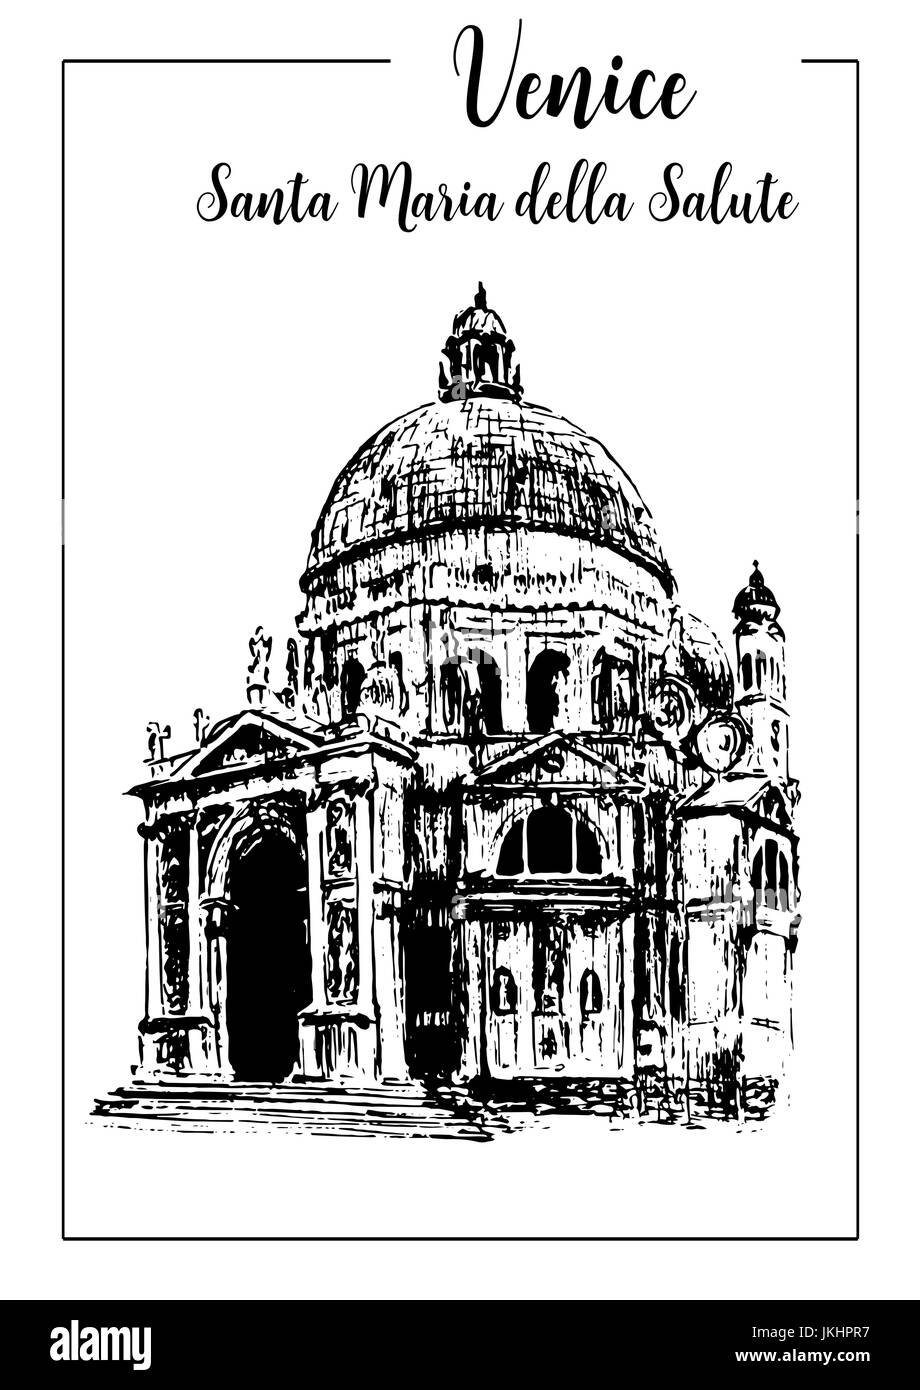 Santa Maria della Salute.Venice. vector sketch Stock Vector